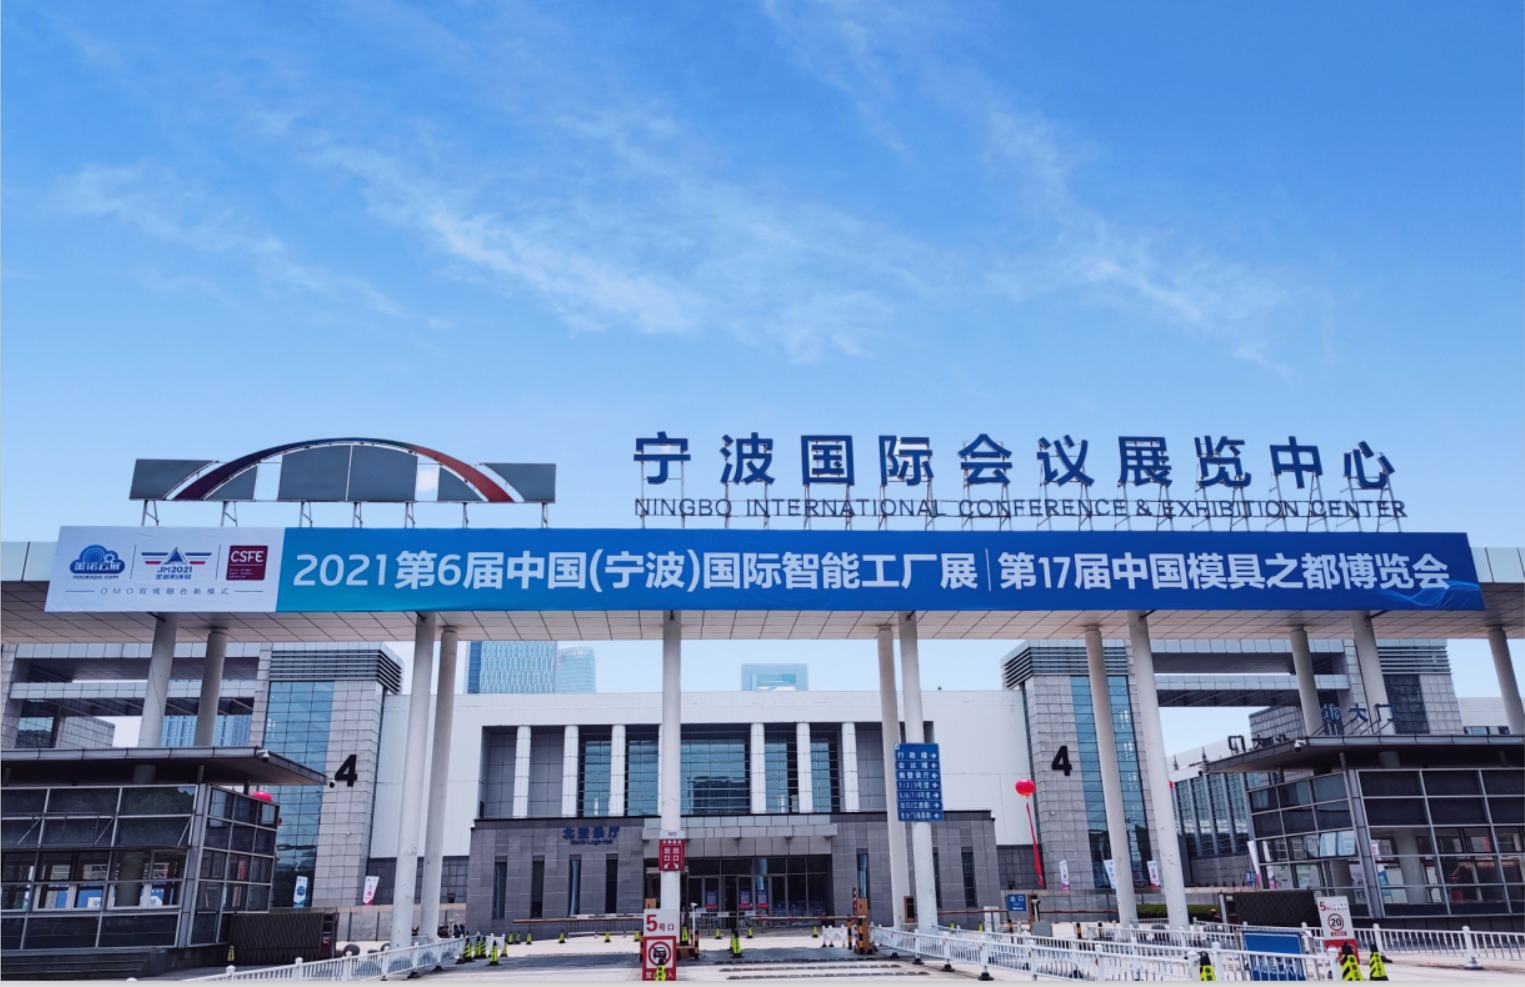 宁波)国际智能工厂展览会将于明天5月18日在宁波国际会展中心盛大开幕